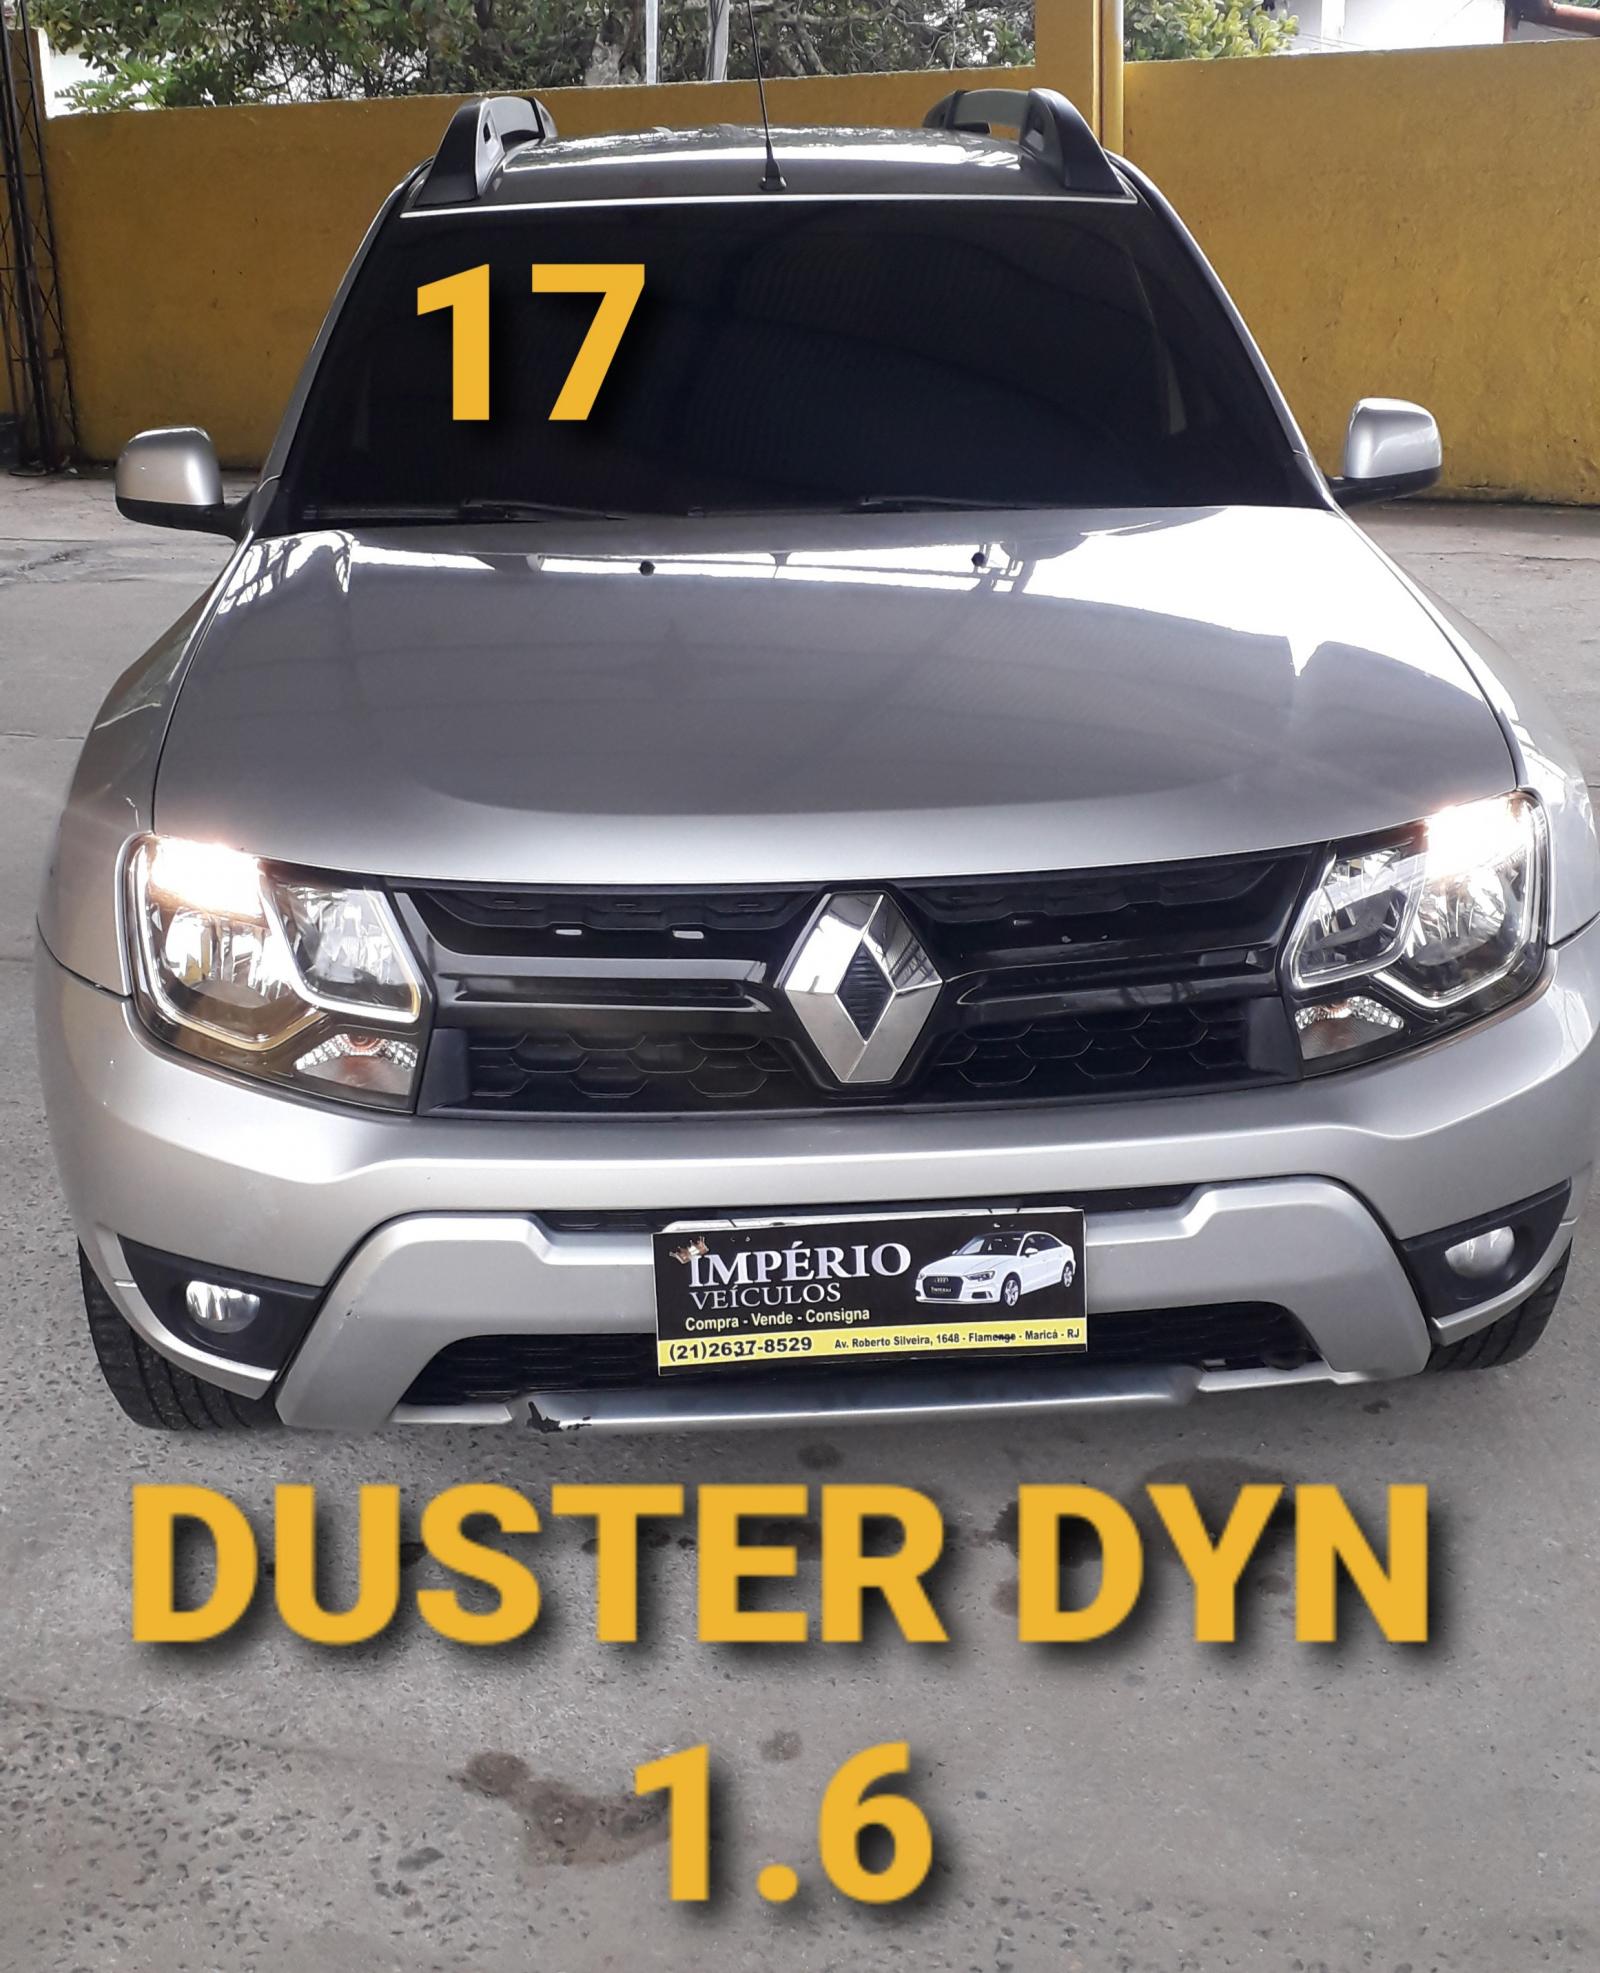 DUSTER DYN 1.6